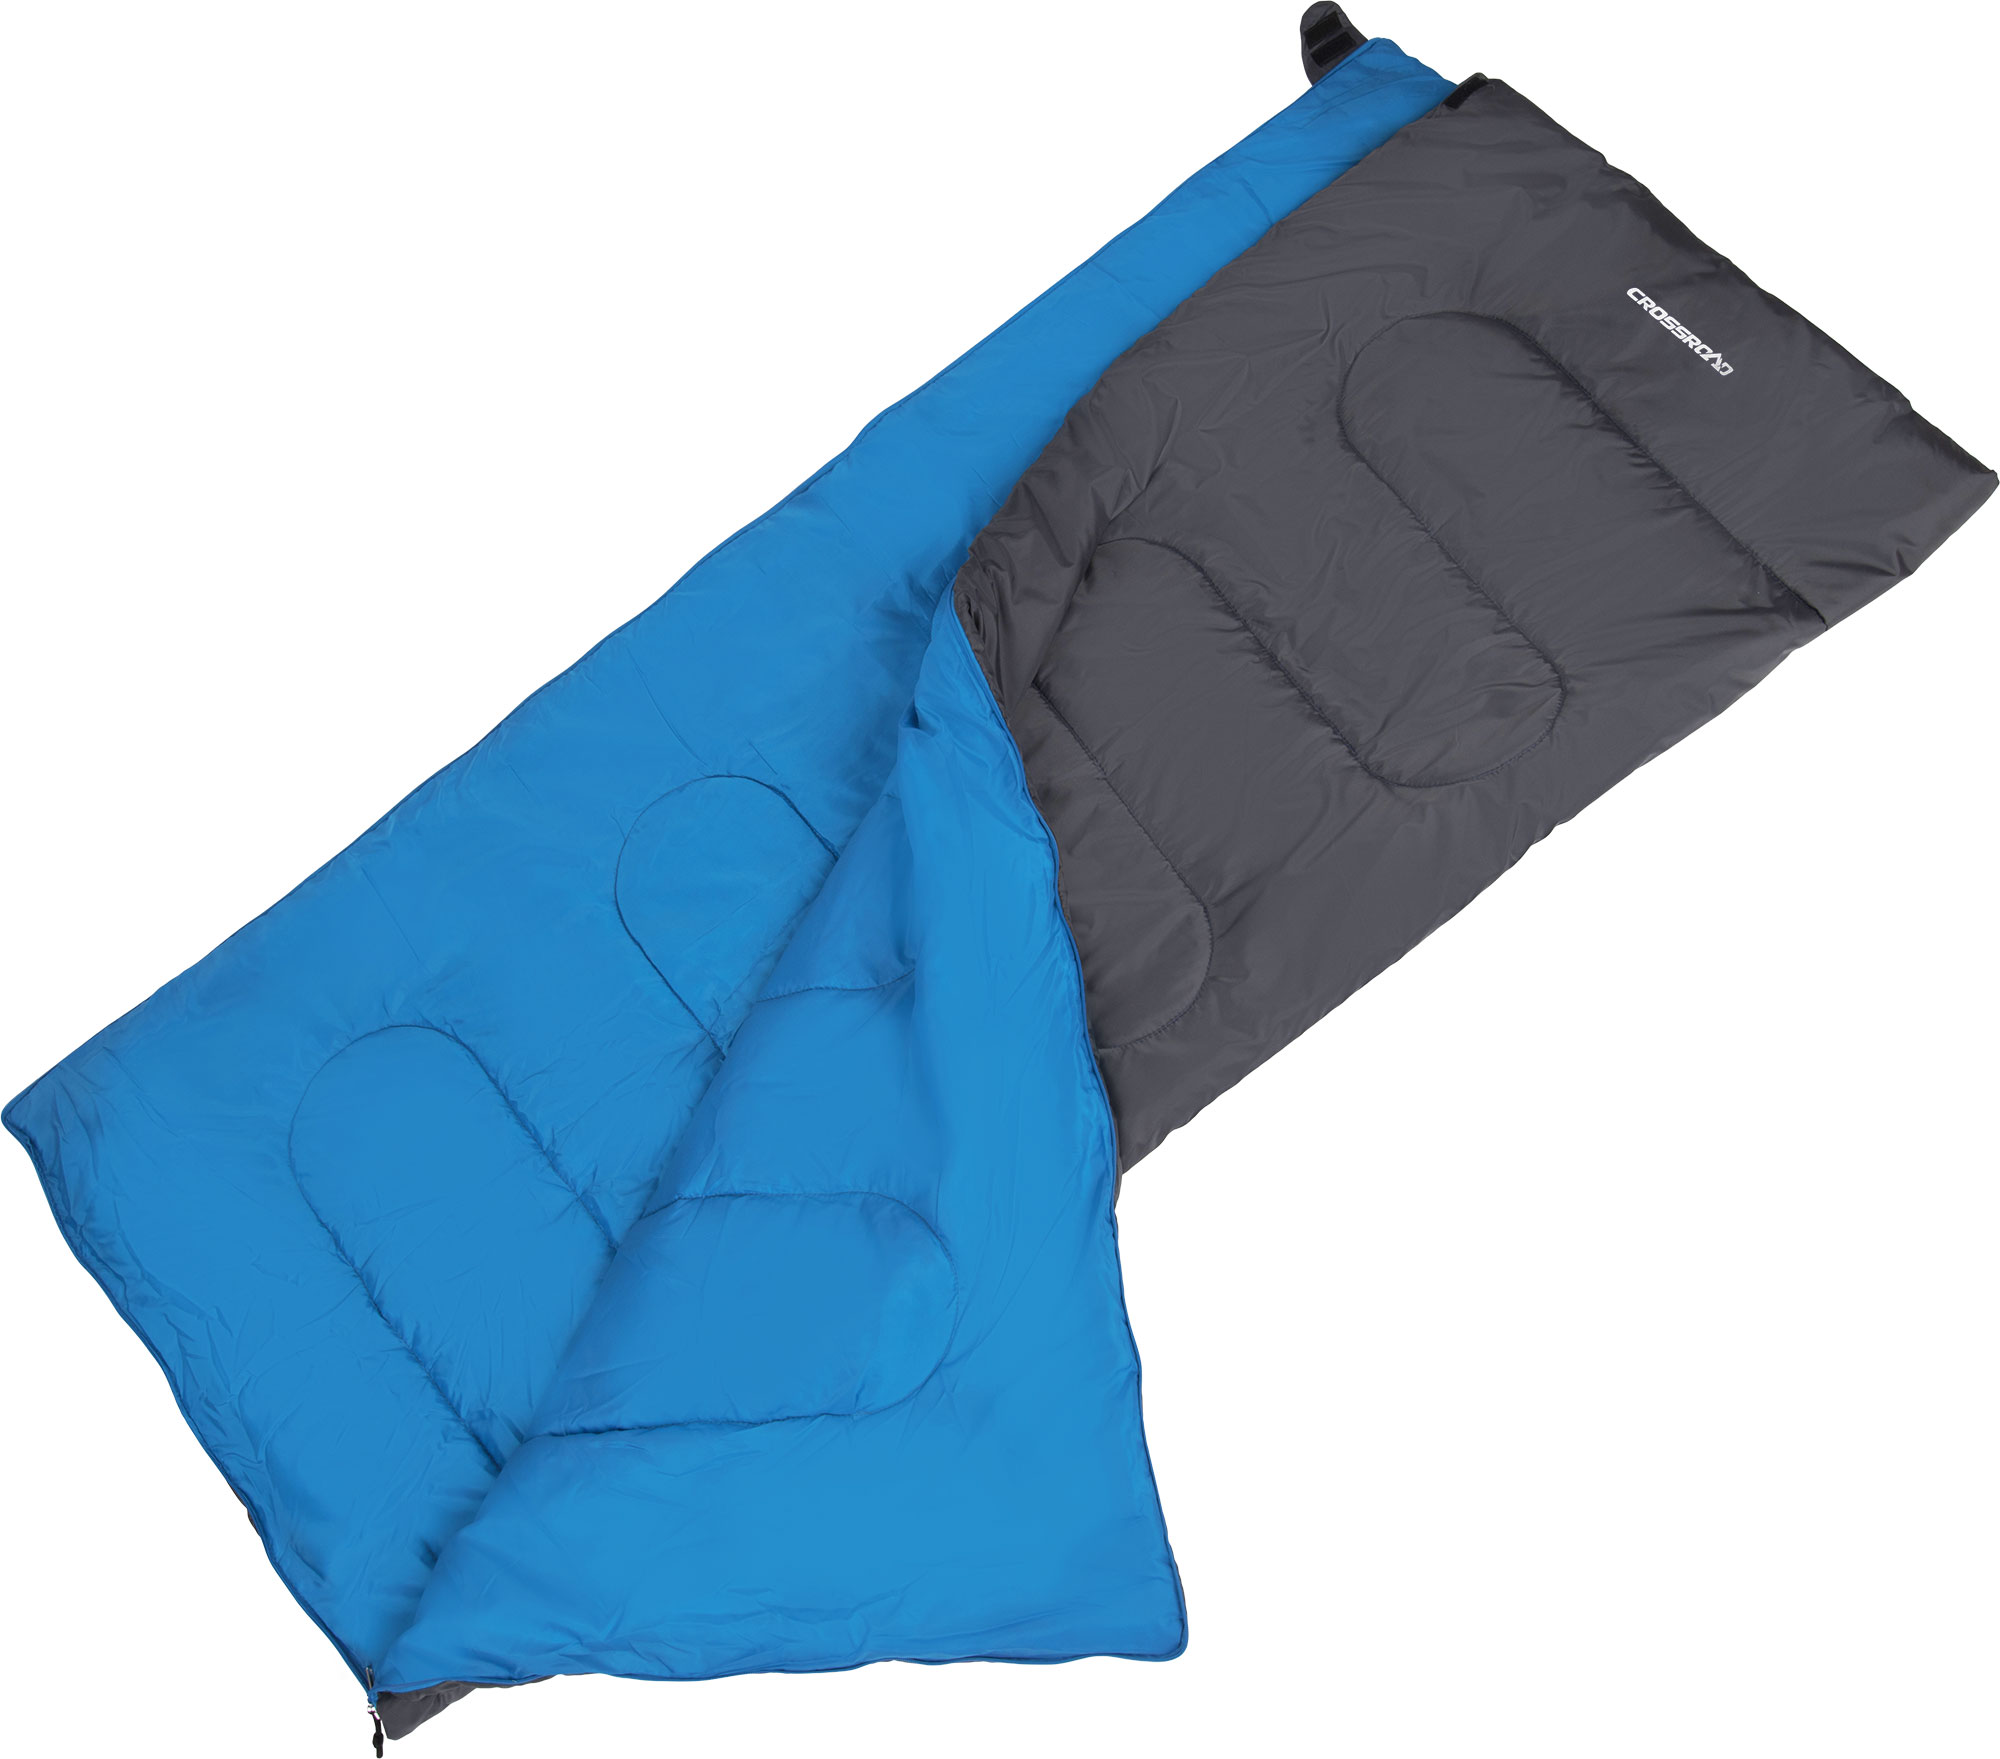 Blanket sleeping bag